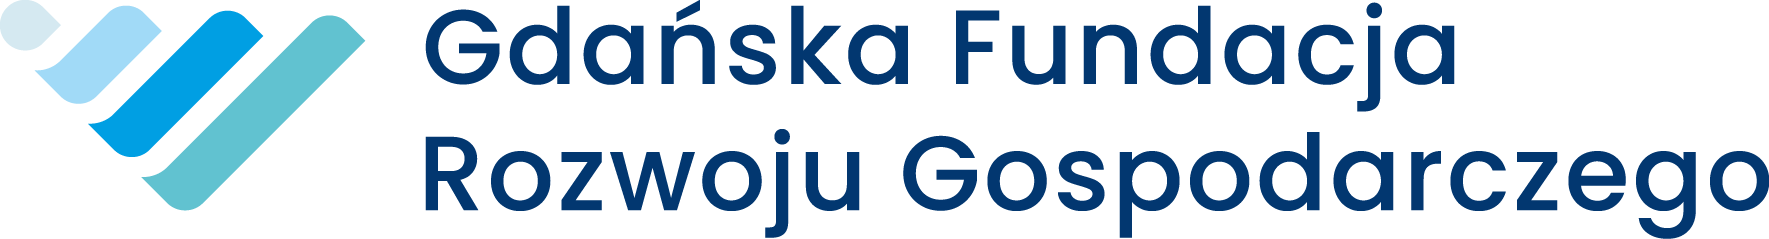 Gdańska Fundacja Rozwoju Gospodarczego